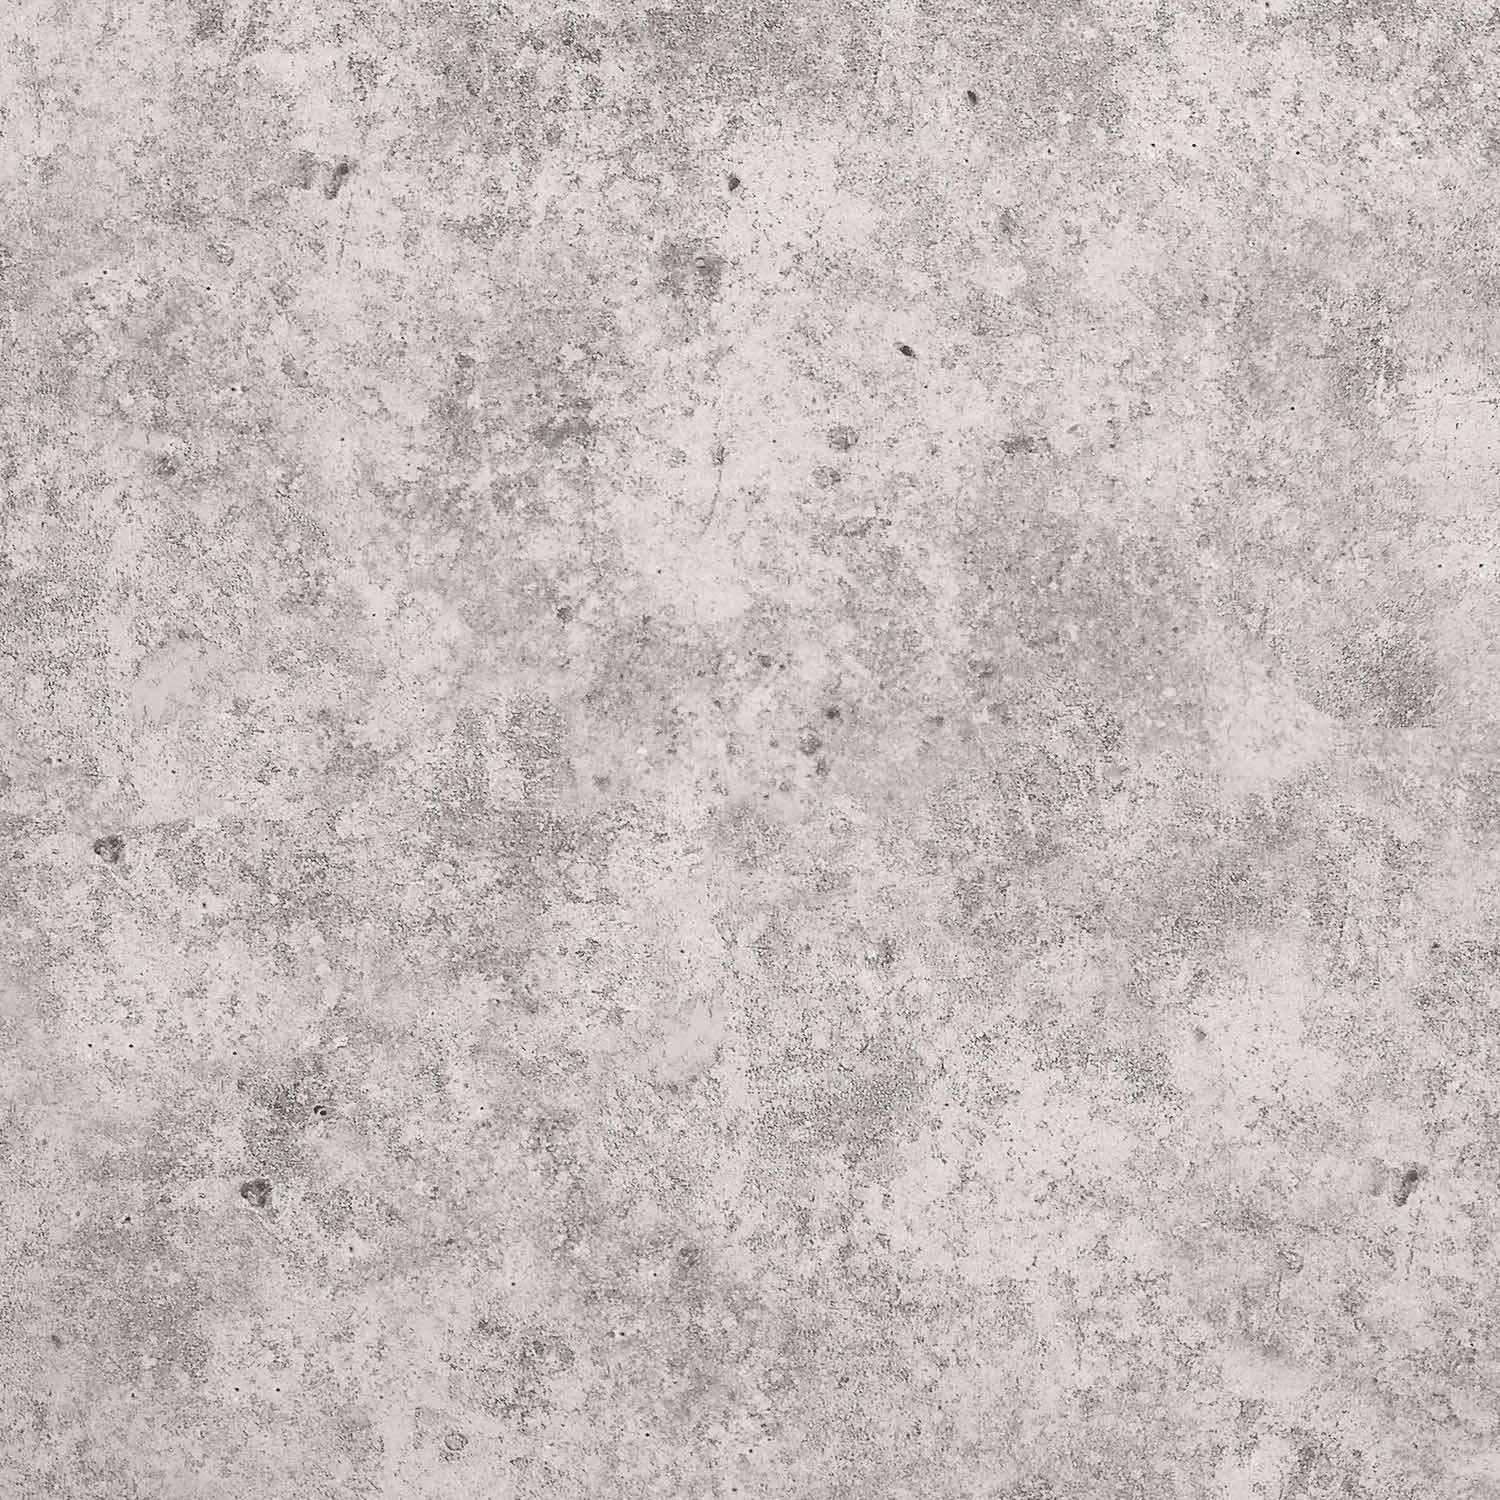 Raw Concrete Wall Wallpaper